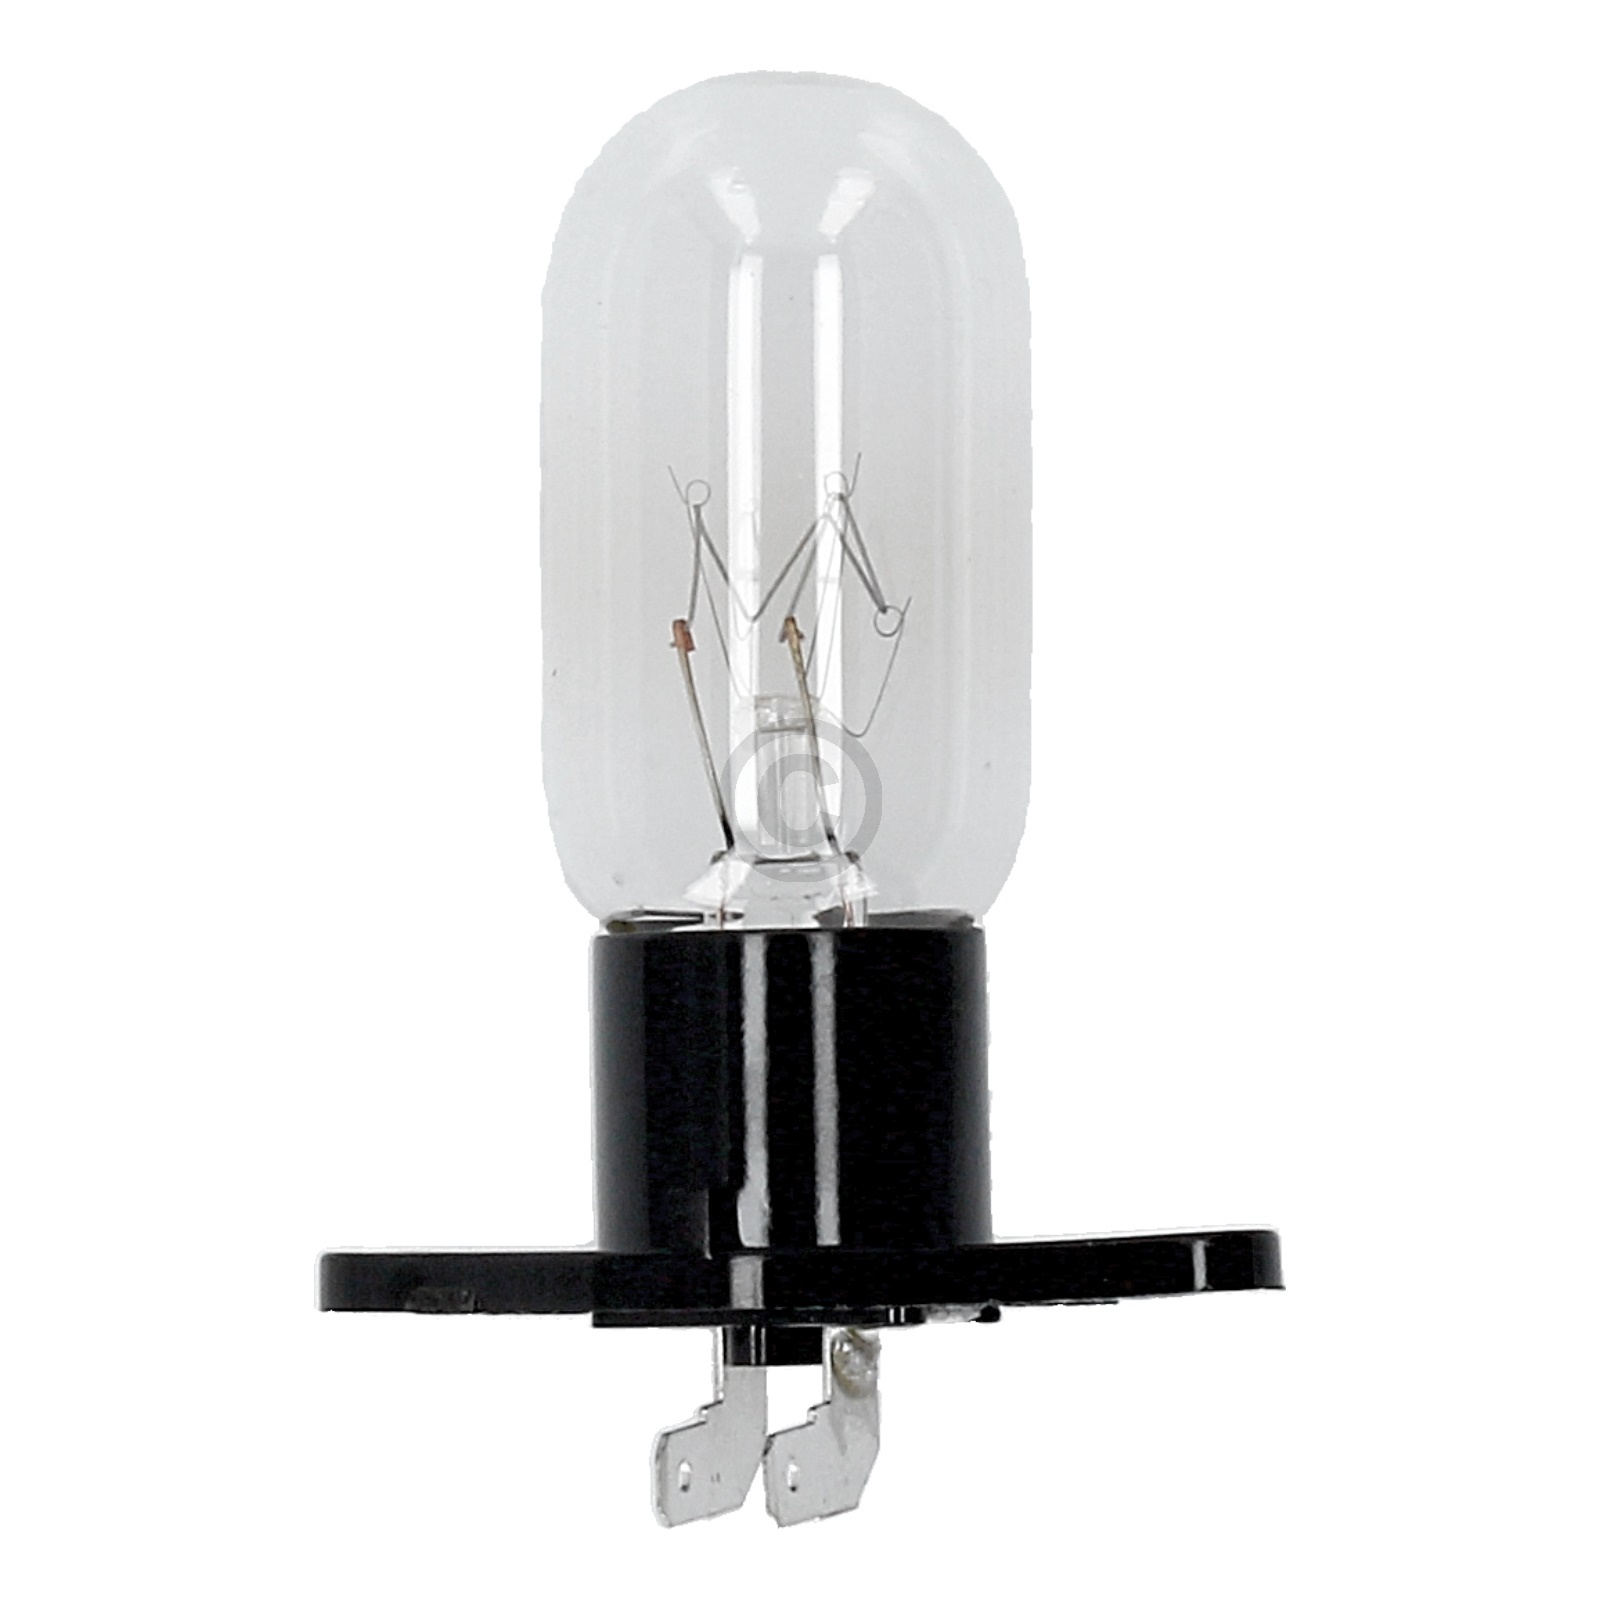 Lampe 25W 240V mit Sockel 2x4,8mmAMP LG 6912W3B002D  für Mikrowelle